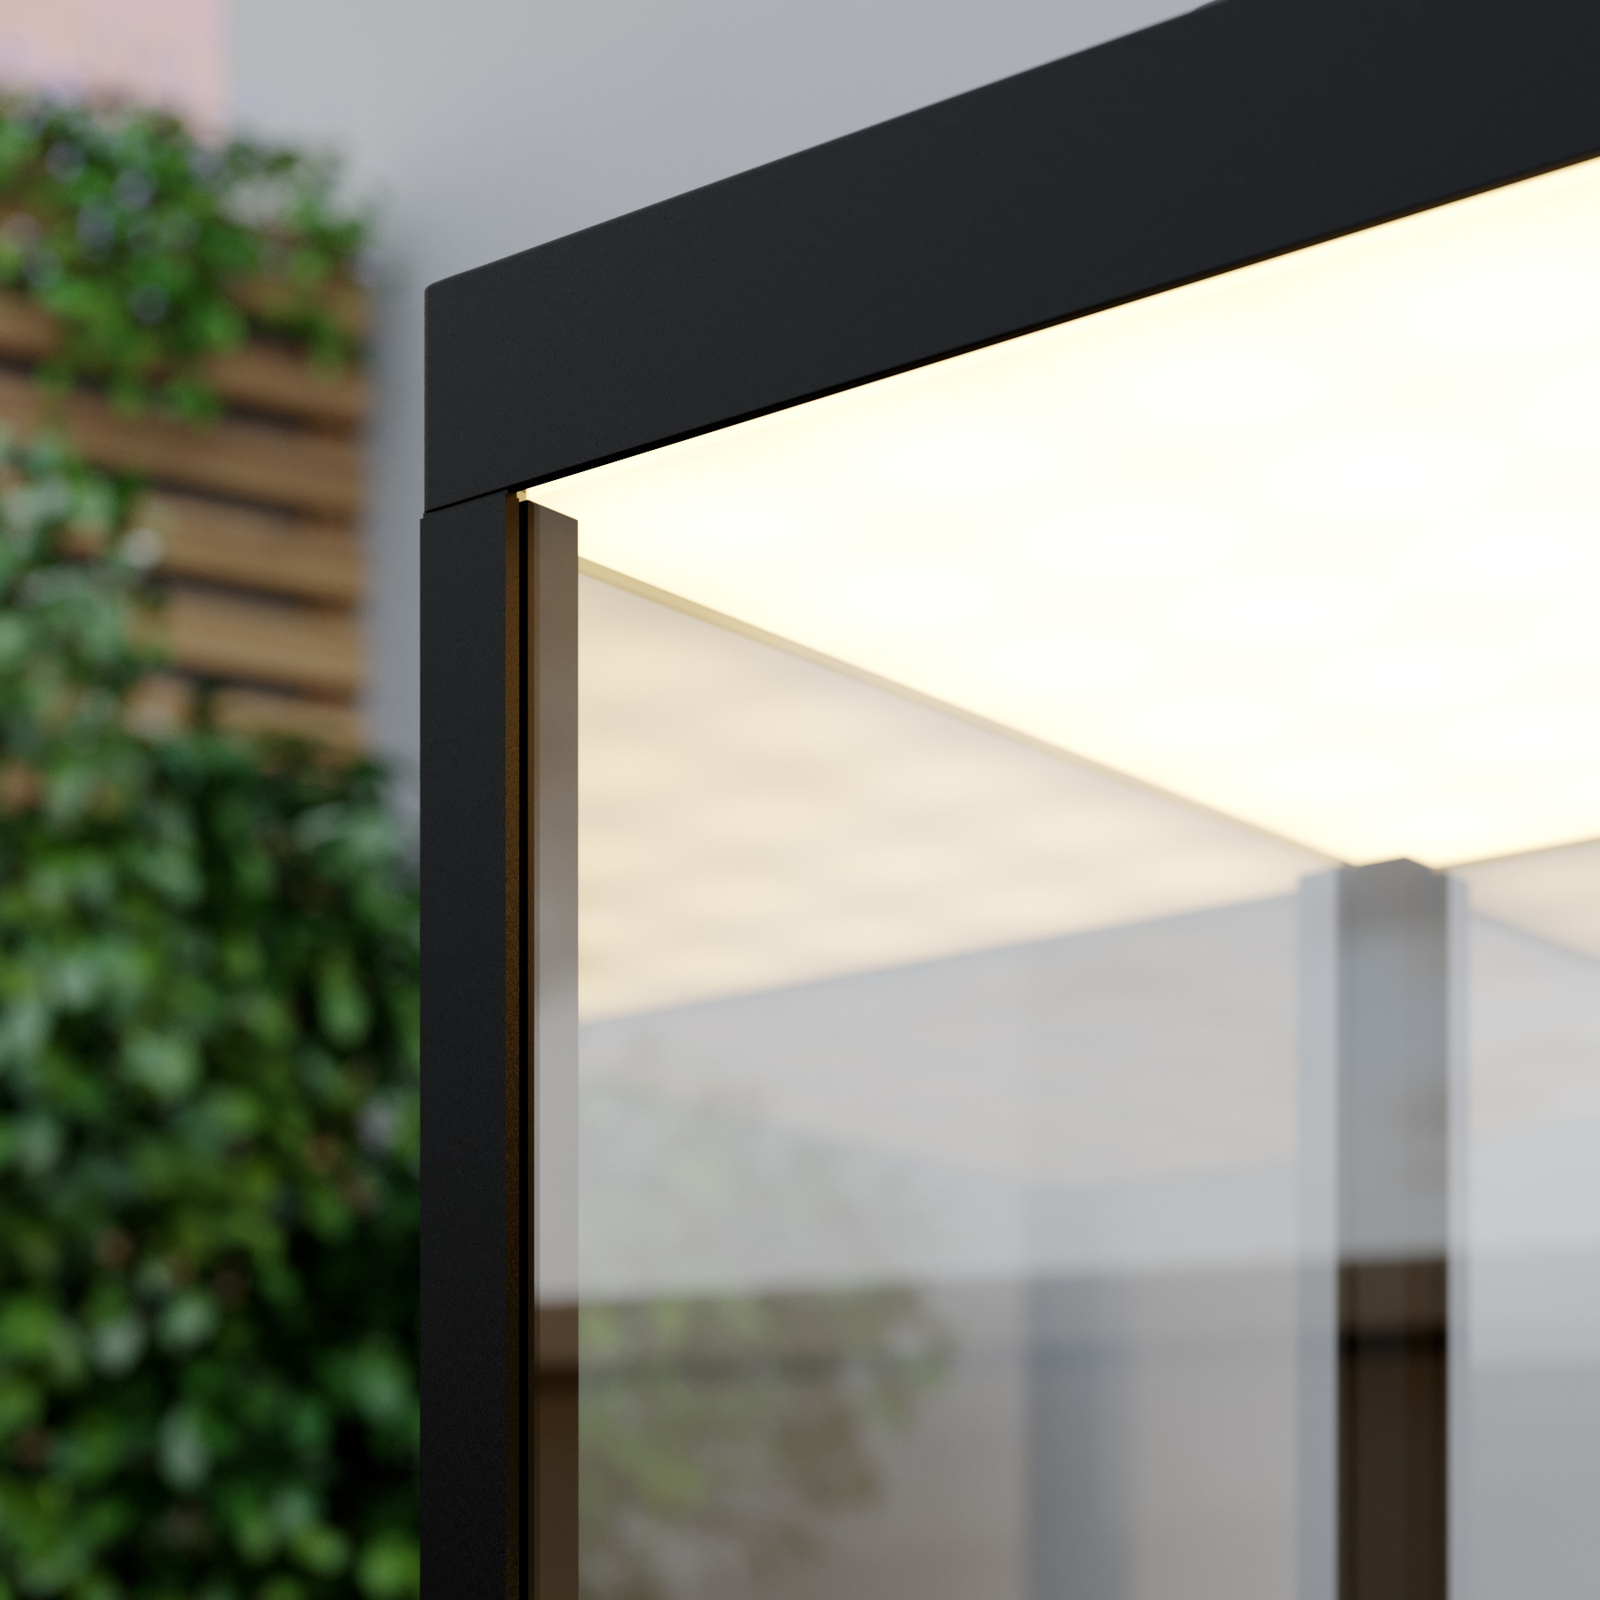 LED tafellamp Cube voor buiten, oplaadbaar